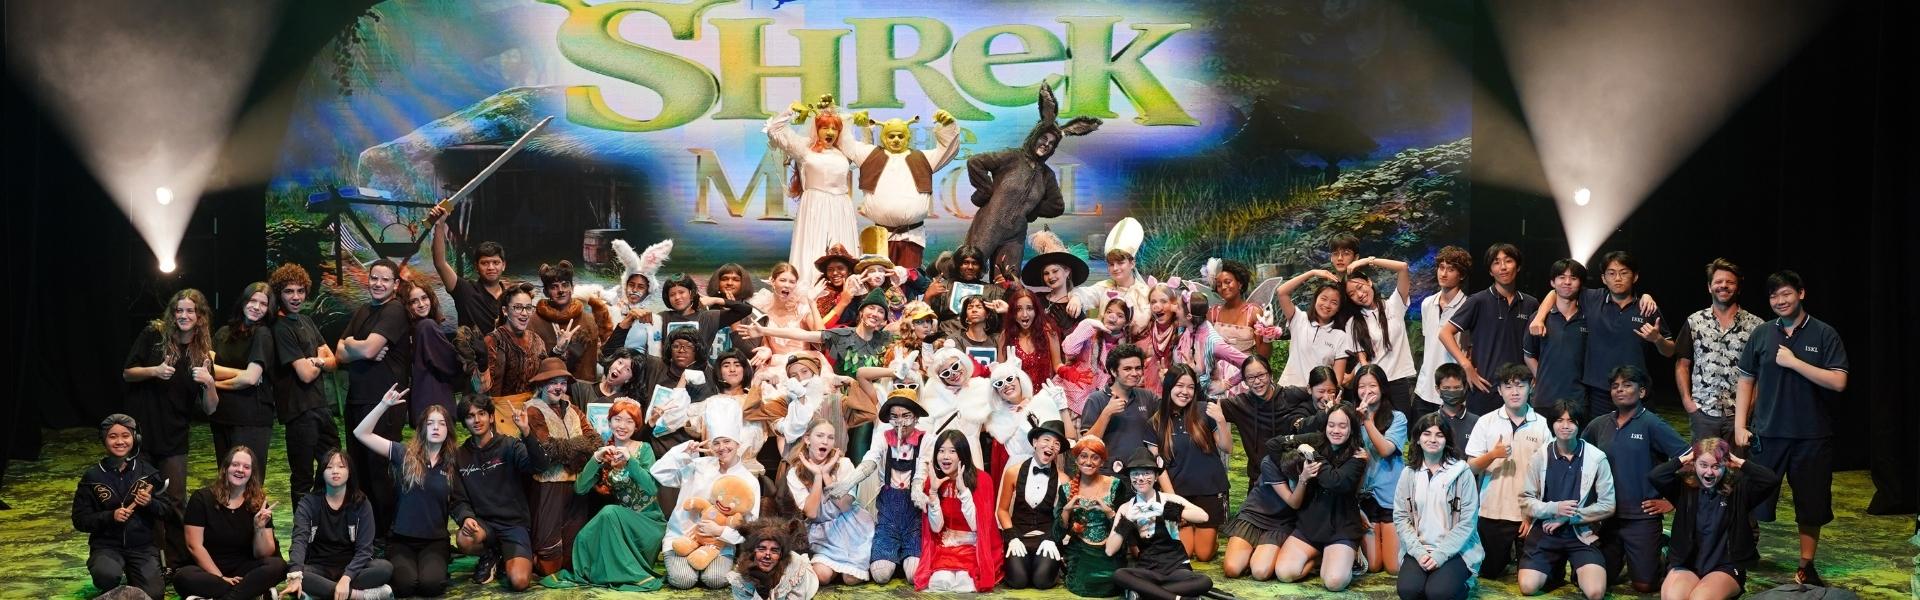 Shrek the Musical Blog Header